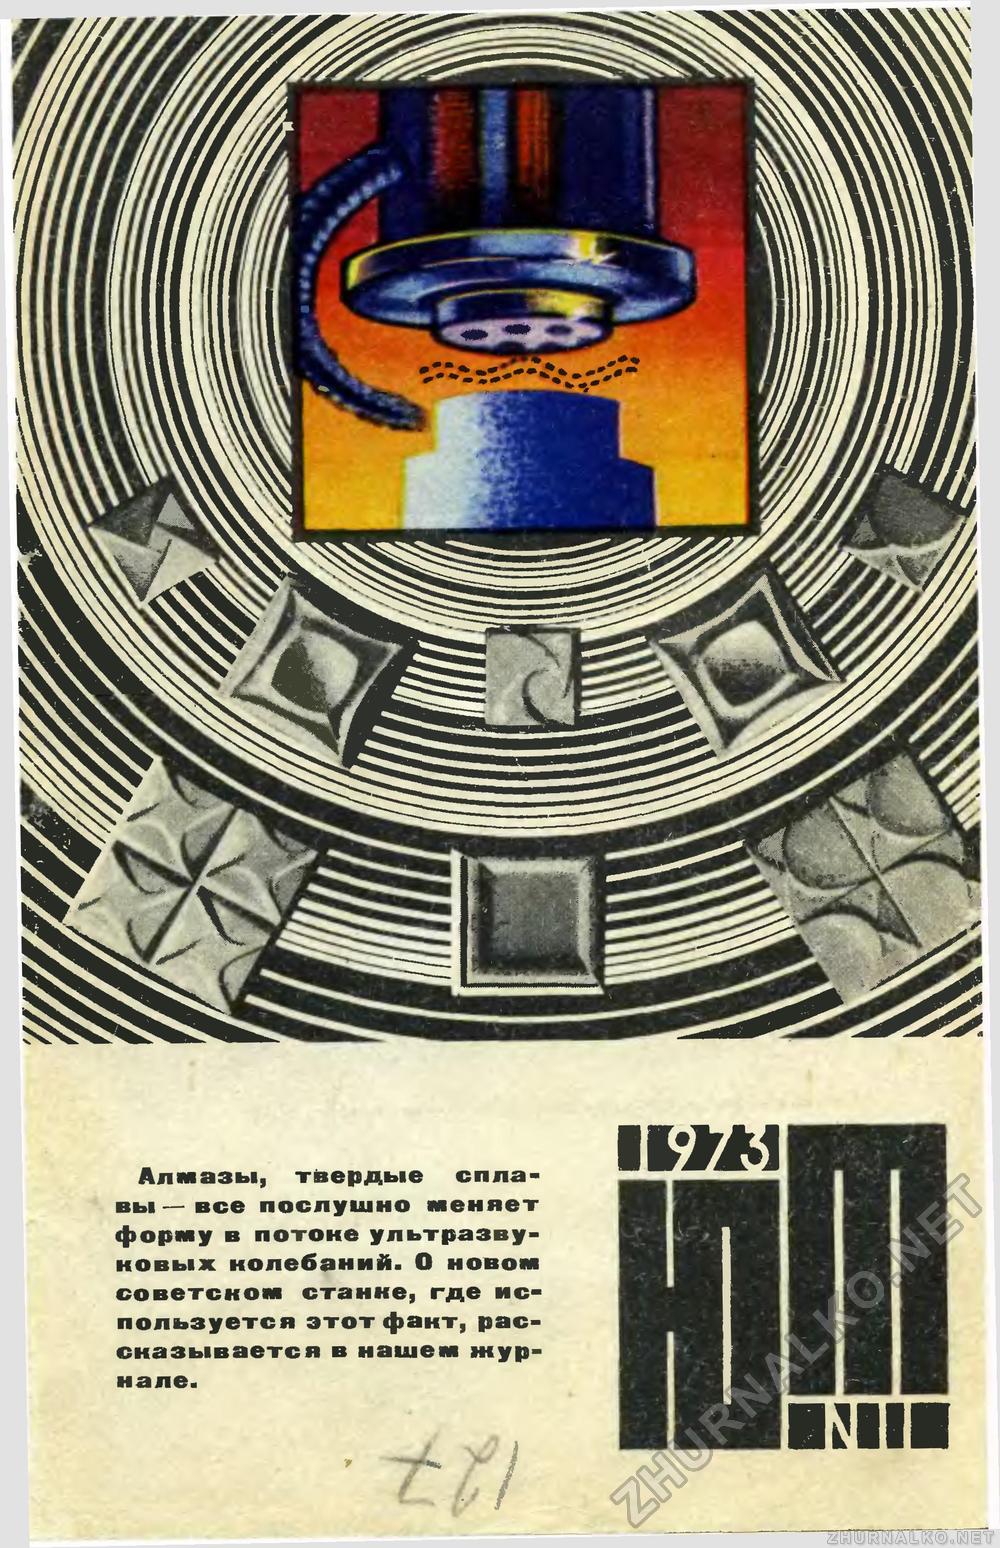   1973-11,  1